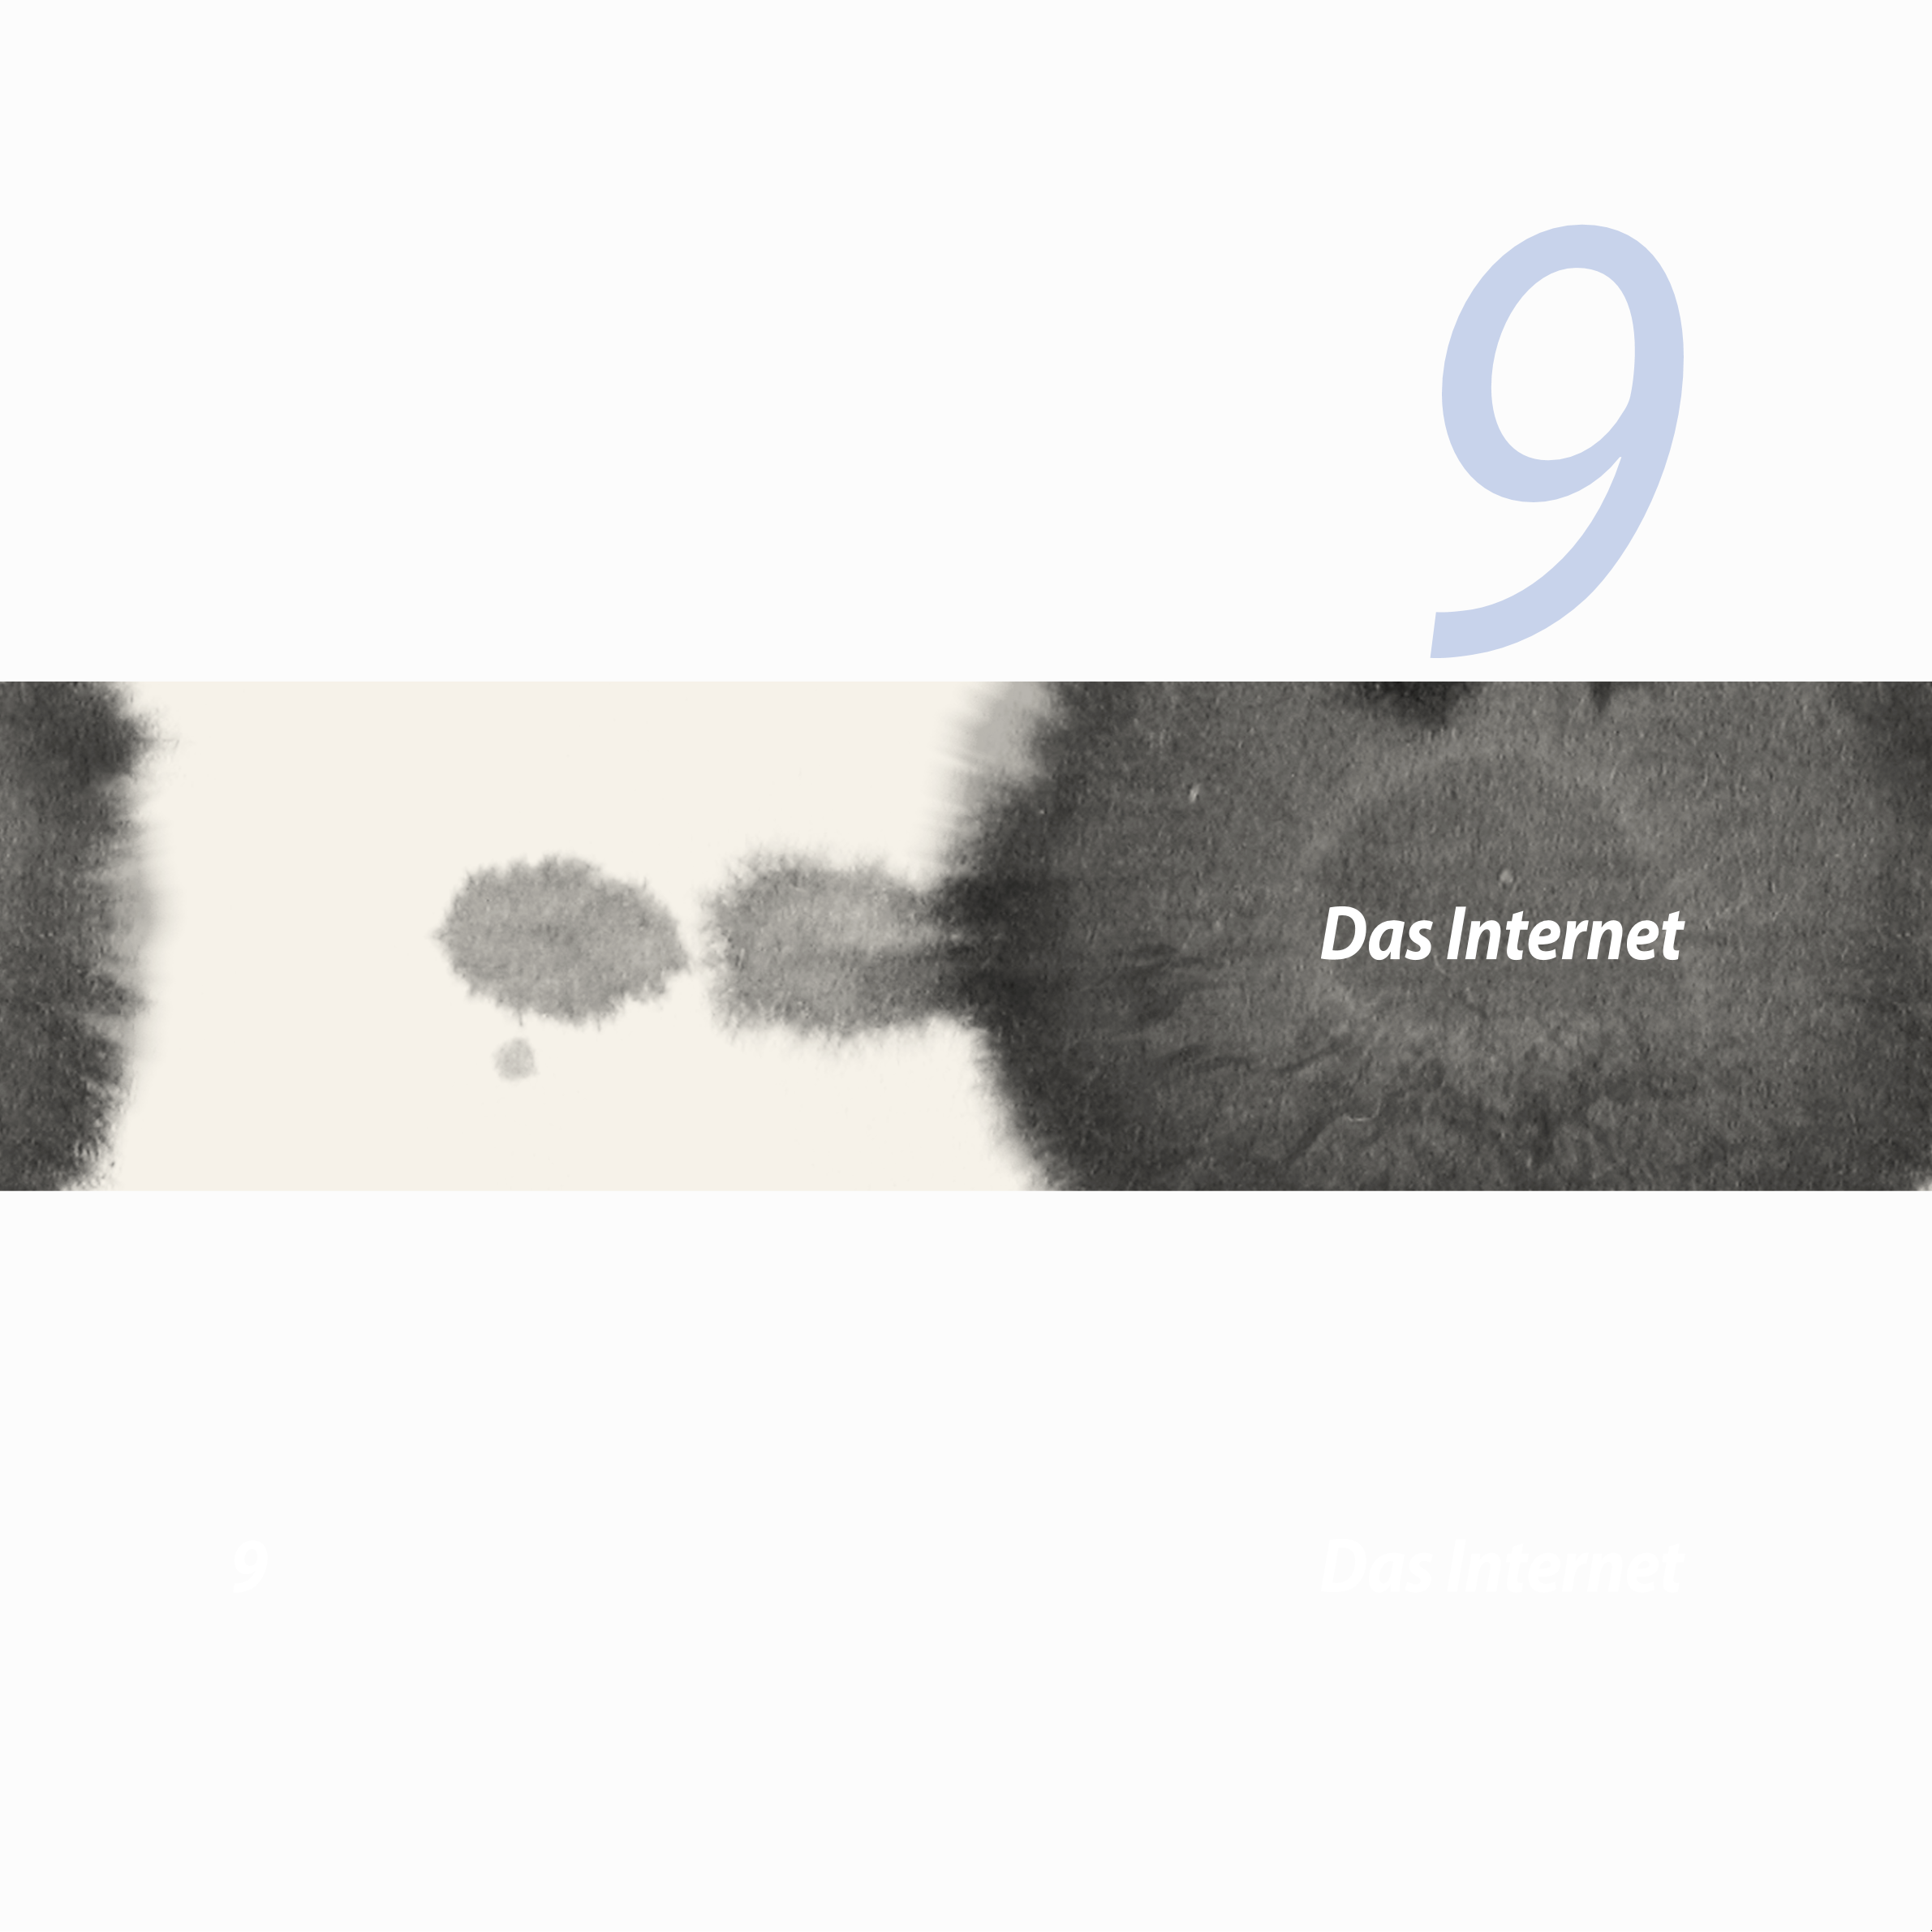 9
Das Internet
9  Das Internet